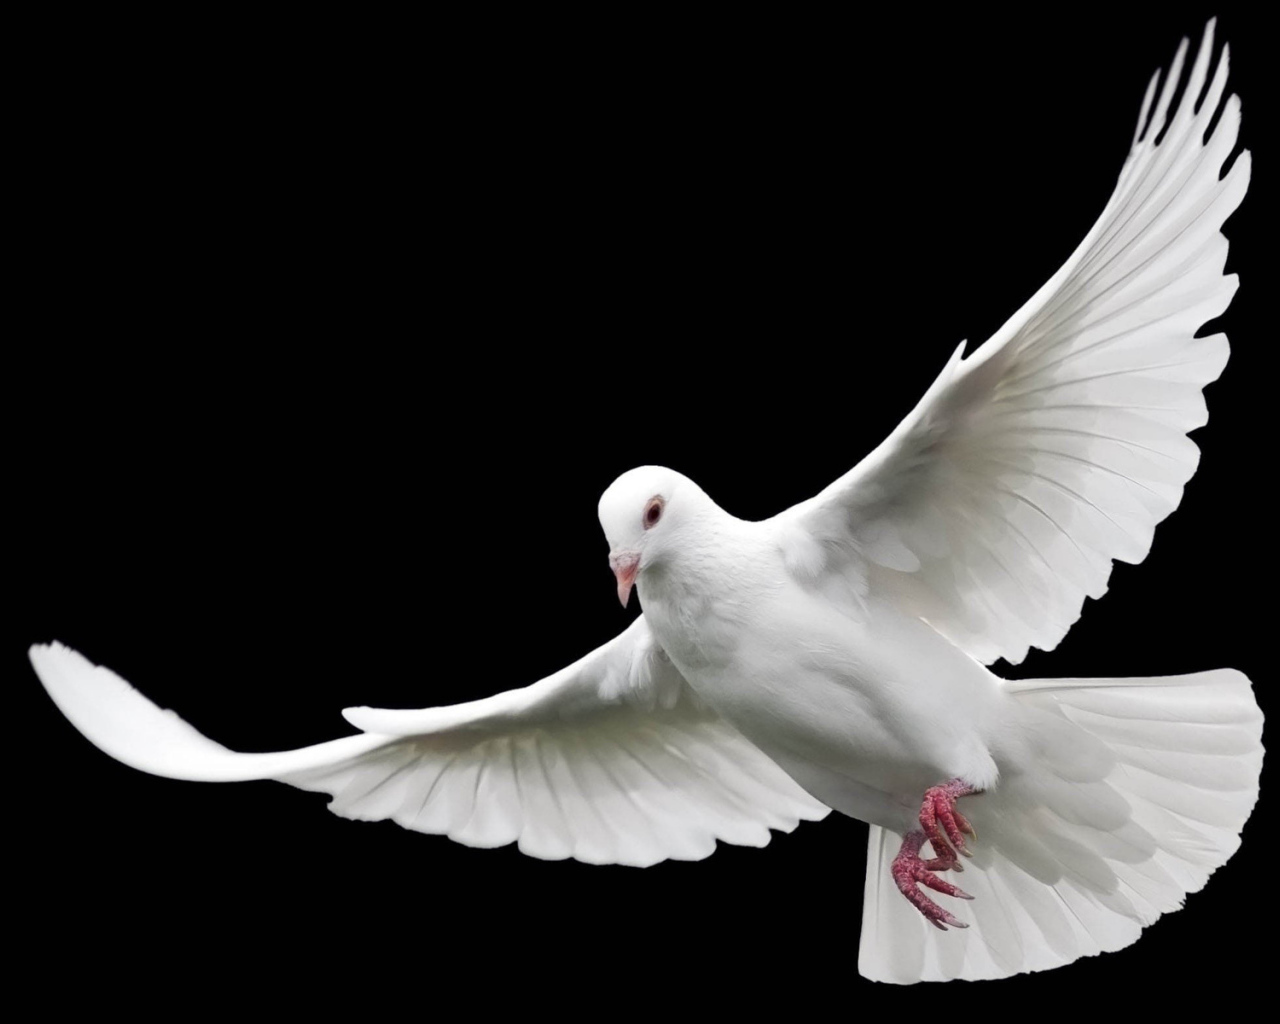 White dove of peace